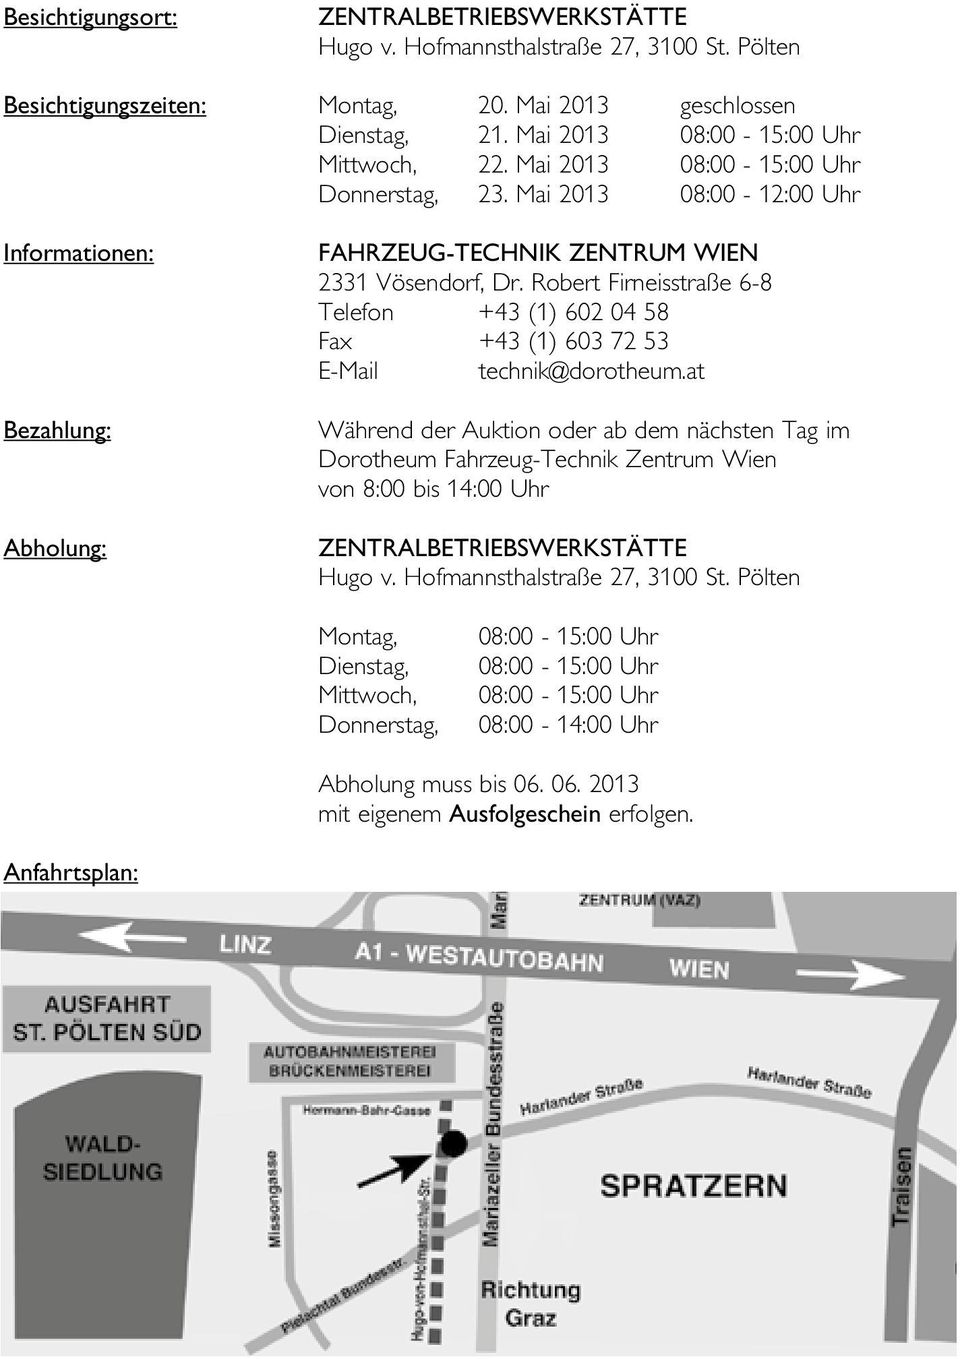 Robert Firneisstraße 6-8 Telefon +43 (1) 602 04 58 Fax +43 (1) 603 72 53 E-Mail technik@dorotheum.